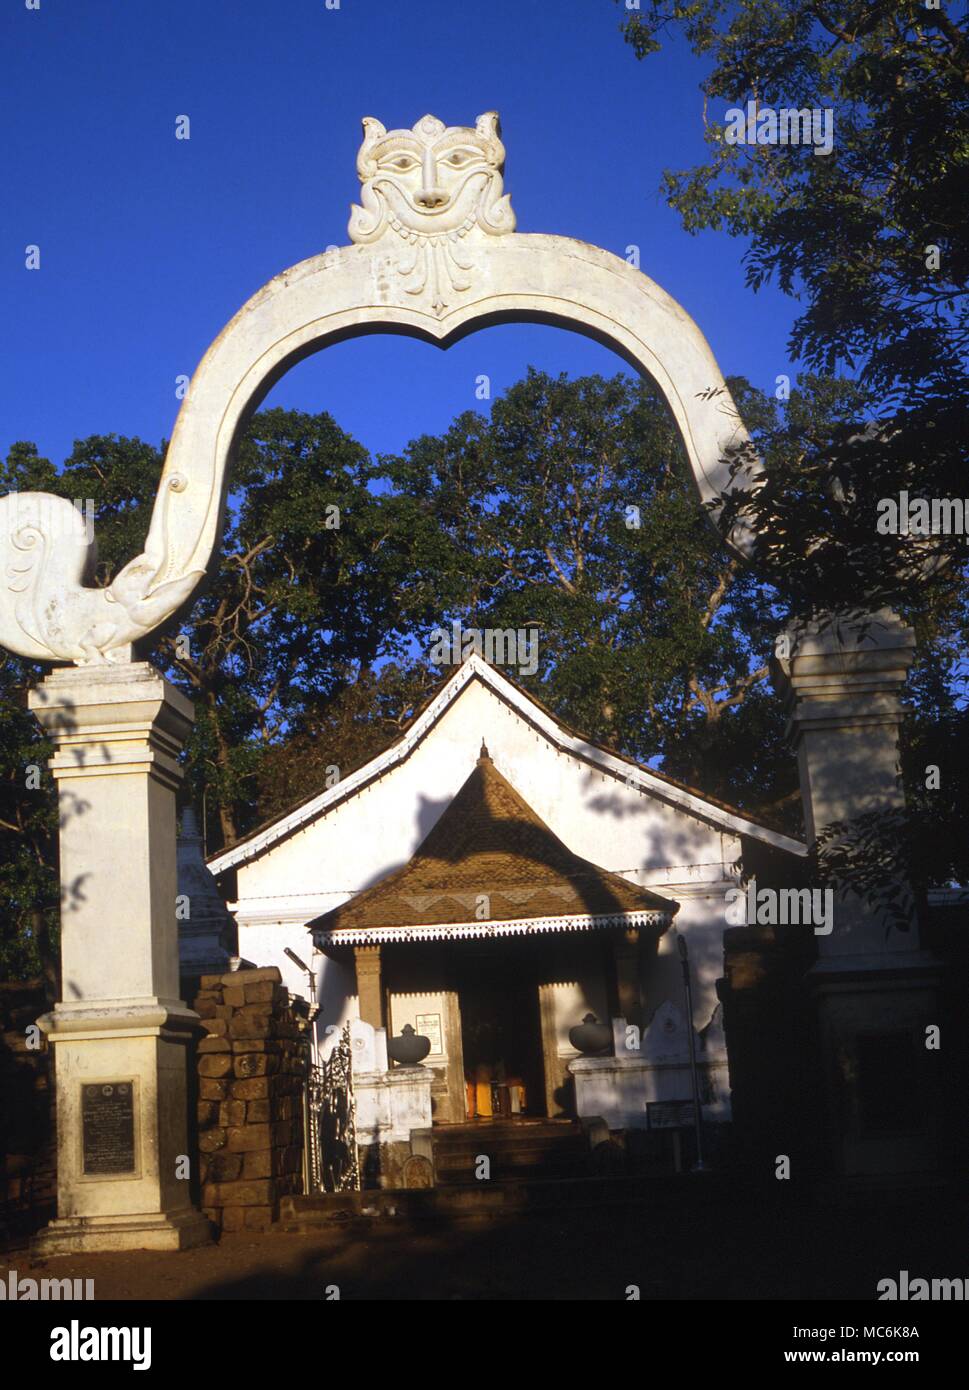 Die Bodhi Baum gepflanzt an der Spitze des ursprünglichen Bodhi Baum, unter dem Buddha die Erleuchtung Eingang zum heiligen Bezirk mit Baum hinter Sri Lanka Anuradhapura Stockfoto